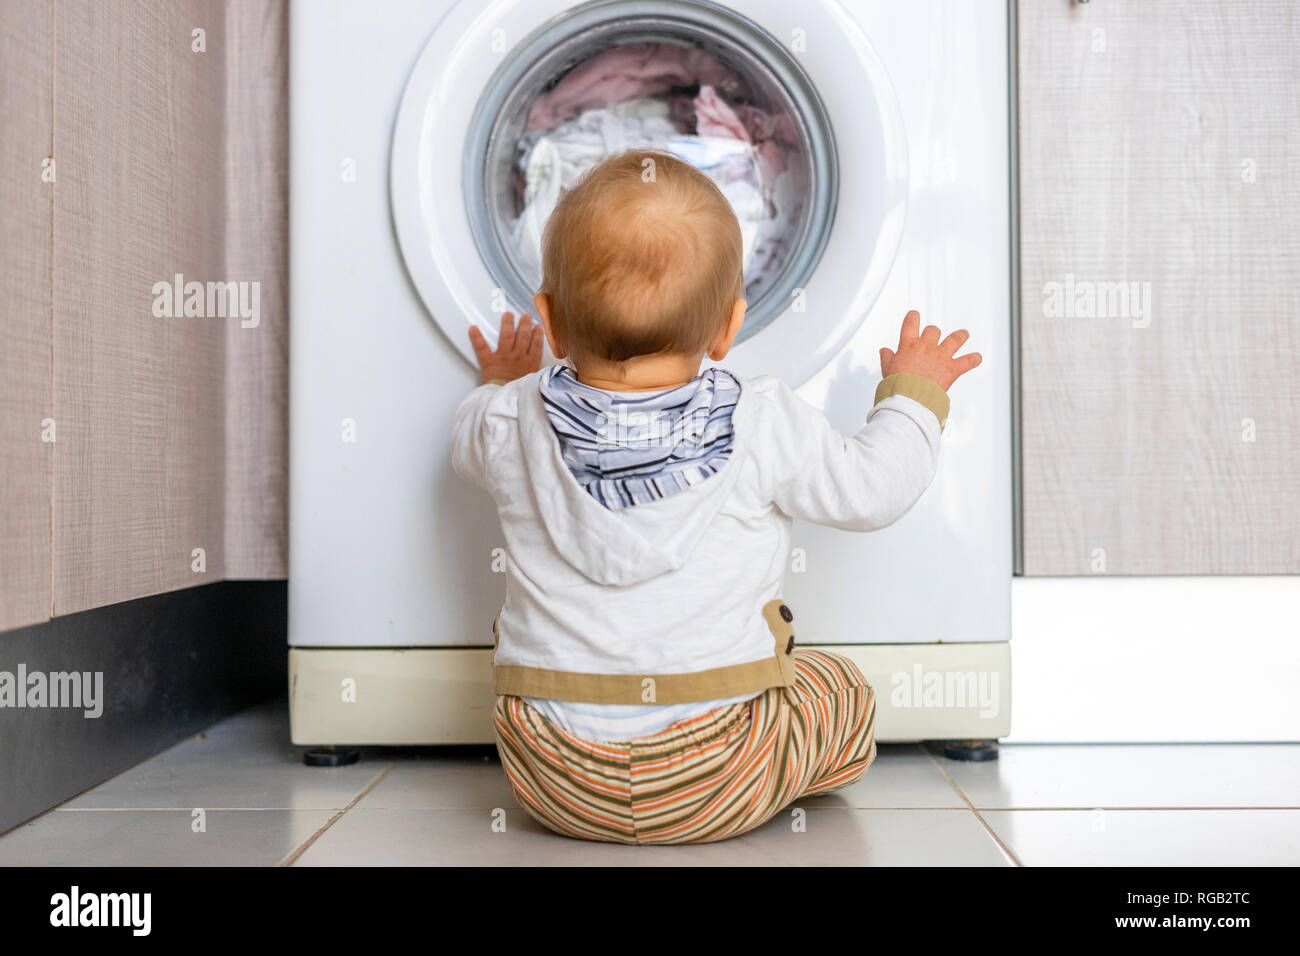 Baby Boy interesados en los ciclos de la lavadora lavando ropa Foto de stock